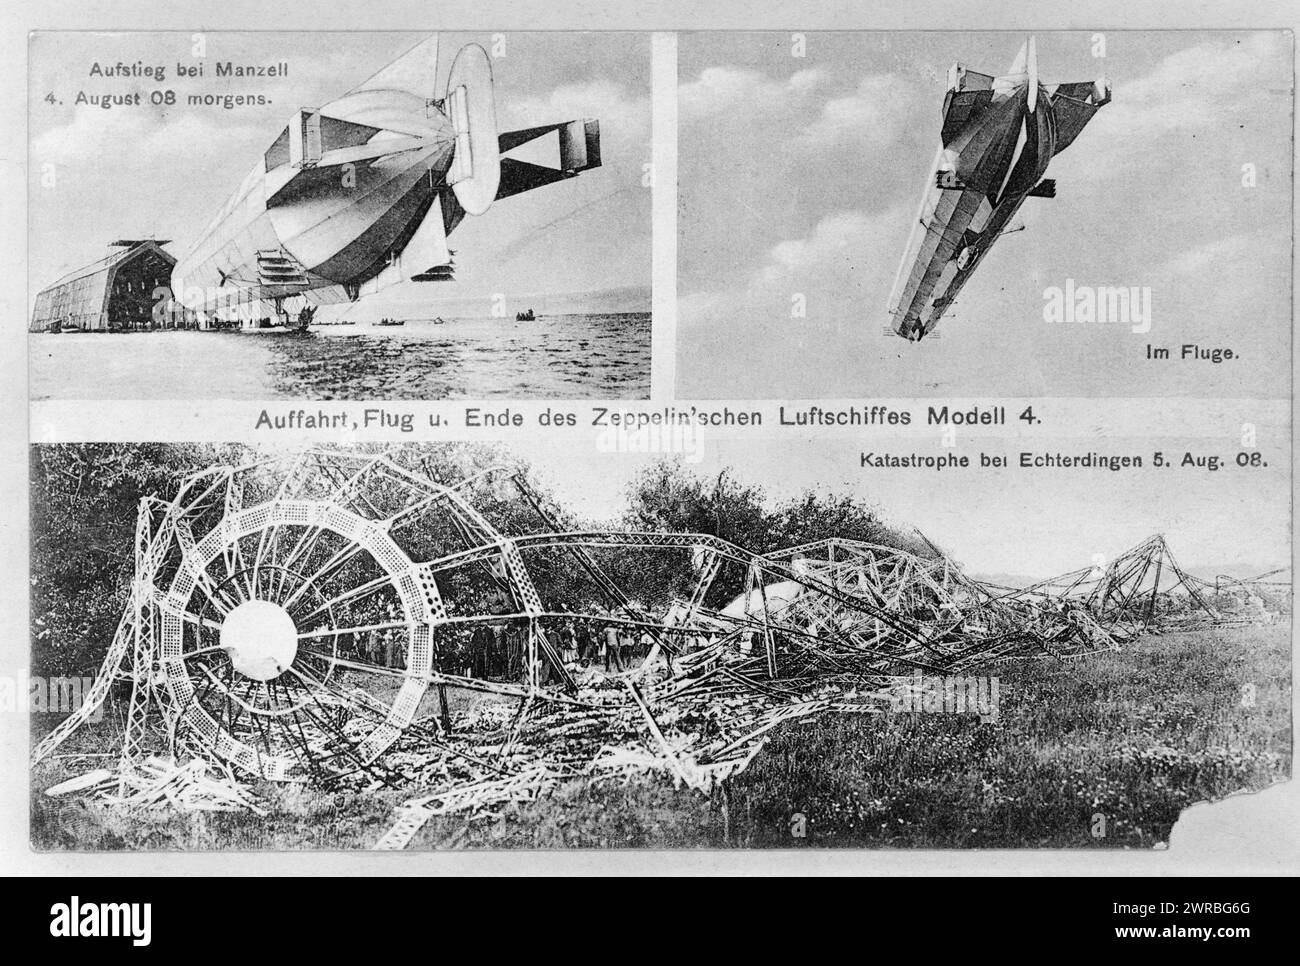 Auffahrt, Flug u. Ende des Zeppelin'schen Luftschiffes Modell 4, tre illustrazioni che mostrano il quarto modello zeppelin decollo a Manzell, la mattina del 4 agosto, e in volo; e relitto a Echterdingen, Germania., 1908., dirigibili, tedesco, Germania, Echterdingen, 1900-1910, stampe fotomeccaniche, 1900-1910., stampe fotomeccaniche, 1900-1910, 1 stampa fotomeccanica Foto Stock